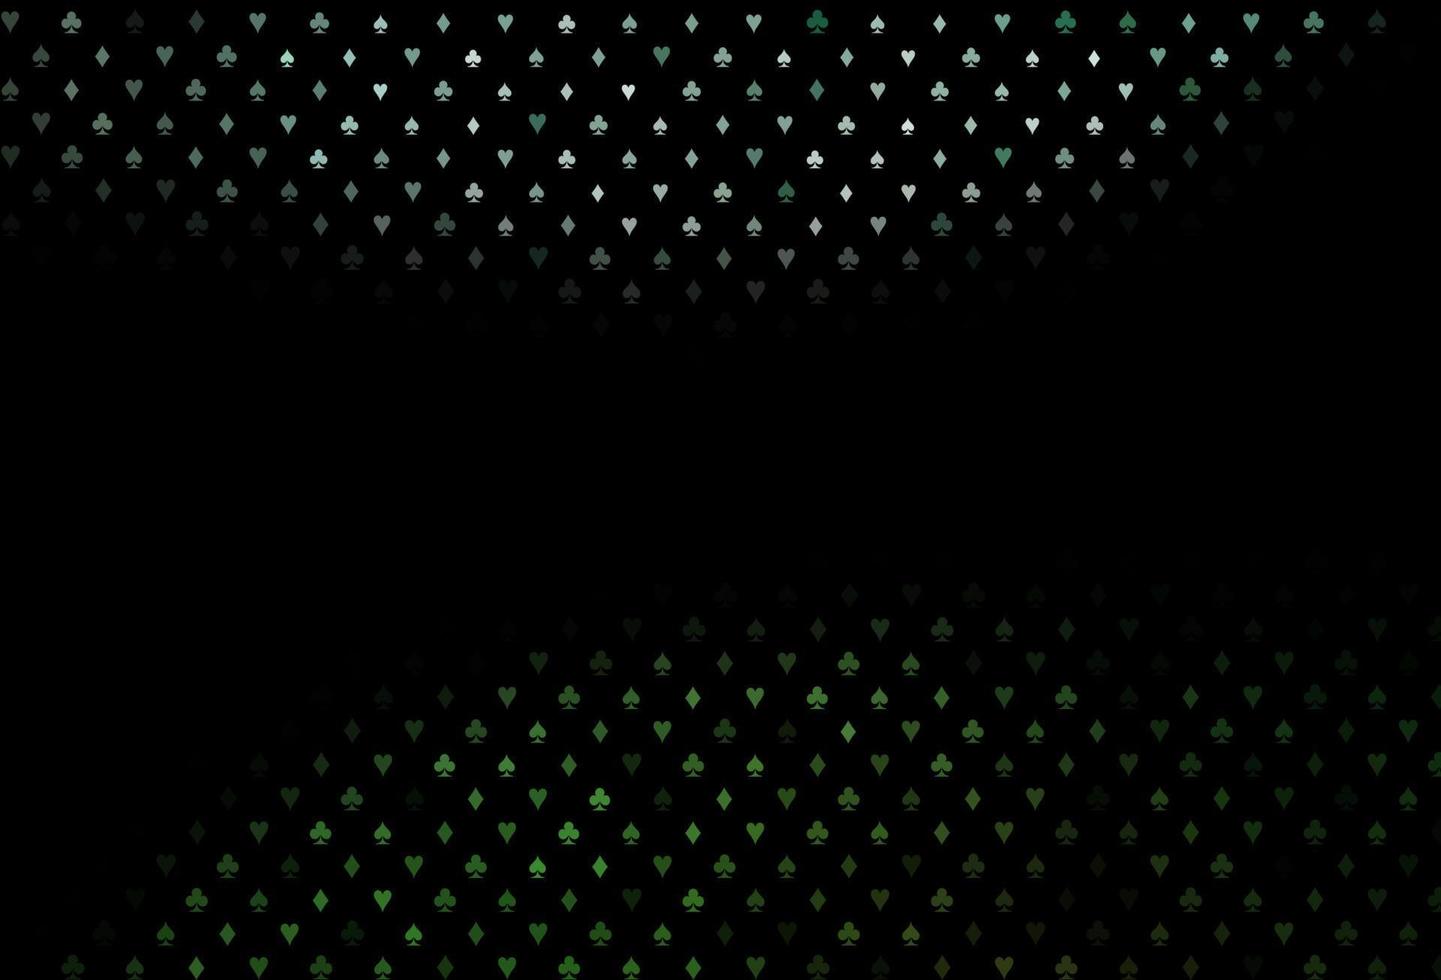 trama vettoriale verde scuro con carte da gioco.